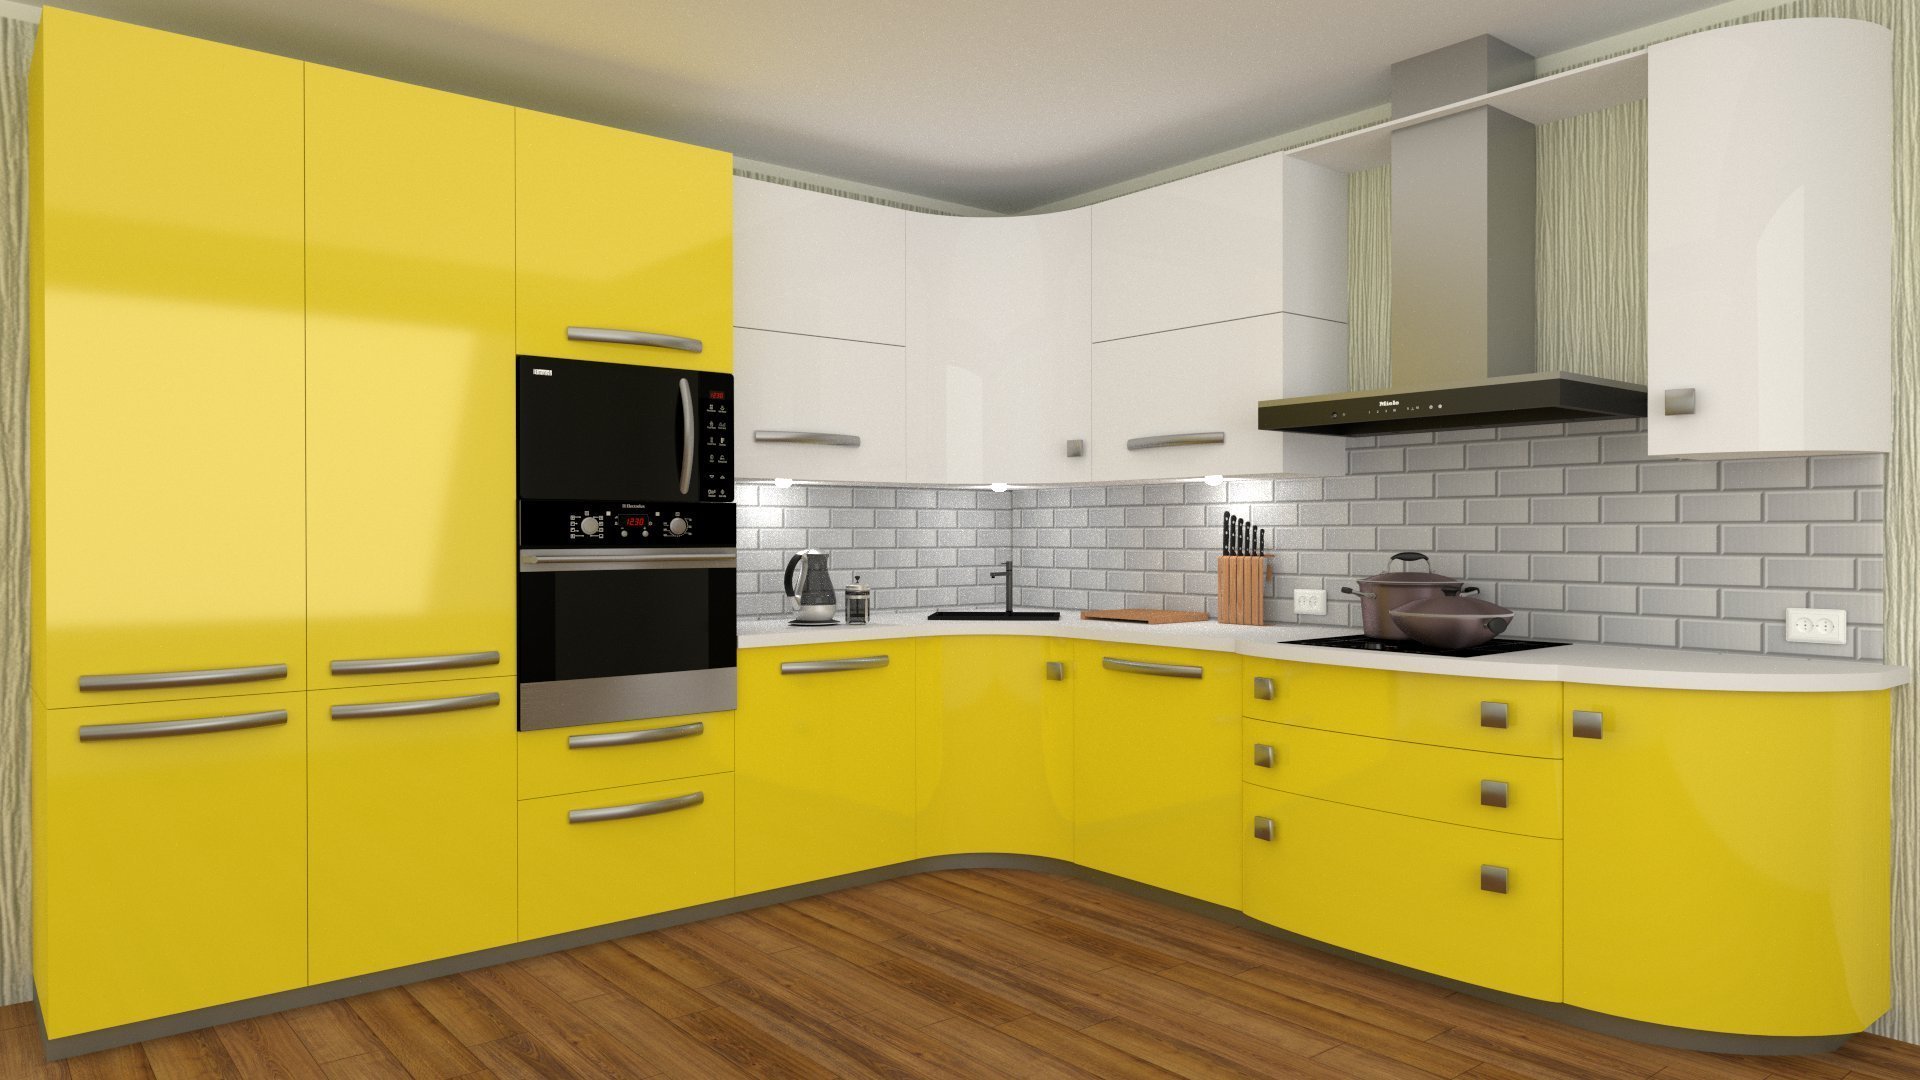 Бело желтая кухня. Желтые кухни. Кухня в желтом цвете. Кухонный гарнитур желтого цвета. Желтая угловая кухня.